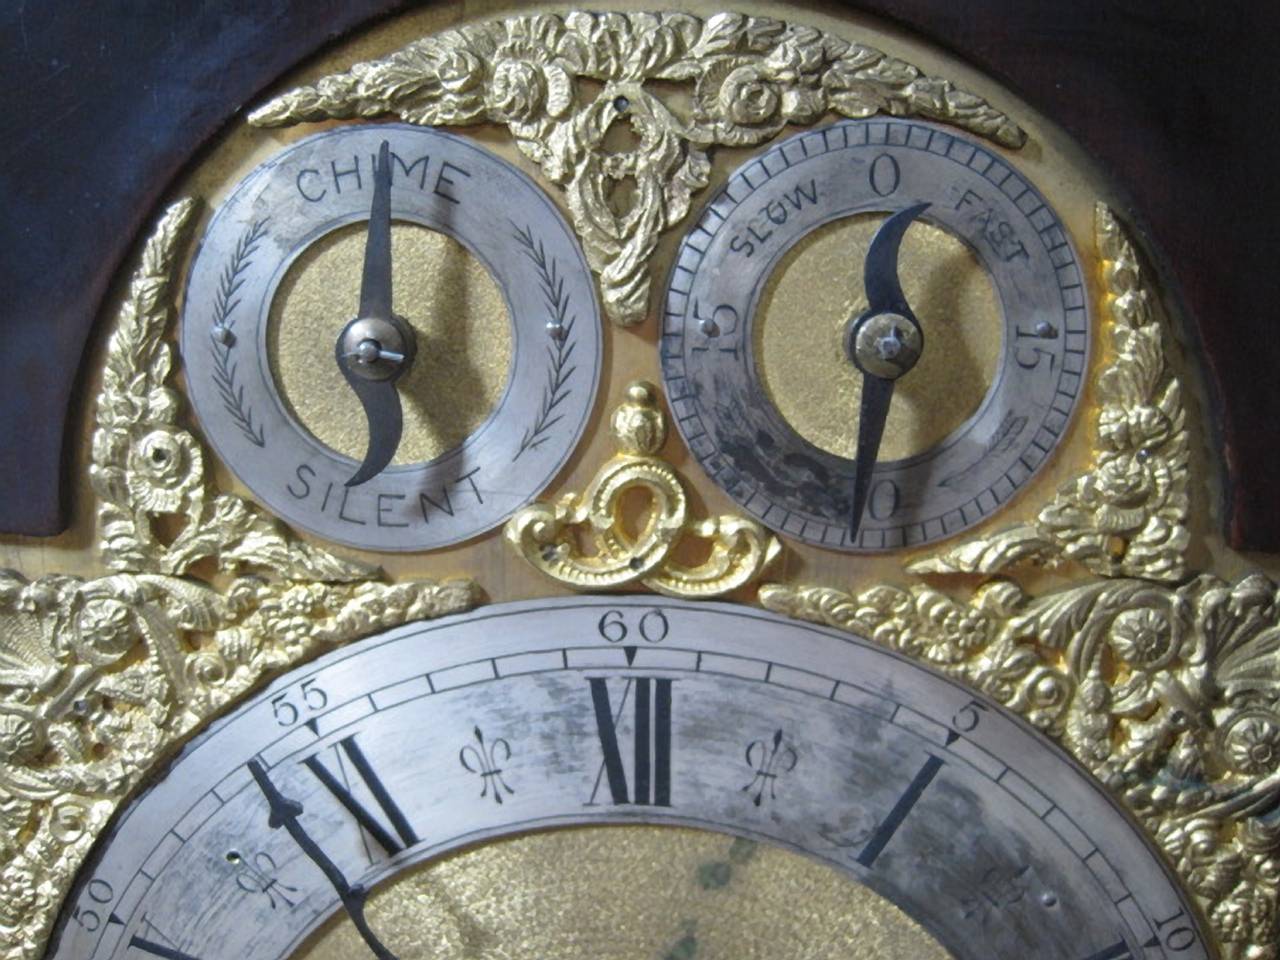 Horloge à console anglaise géorgienne du 19e siècle.

Pendule à console de 8 jours en acajou et bronze doré, à triple chaîne, fusée à 4 gongs et carillon de Westminster. Ce coffret de grande qualité, en acajou et en bronze doré, est doté de